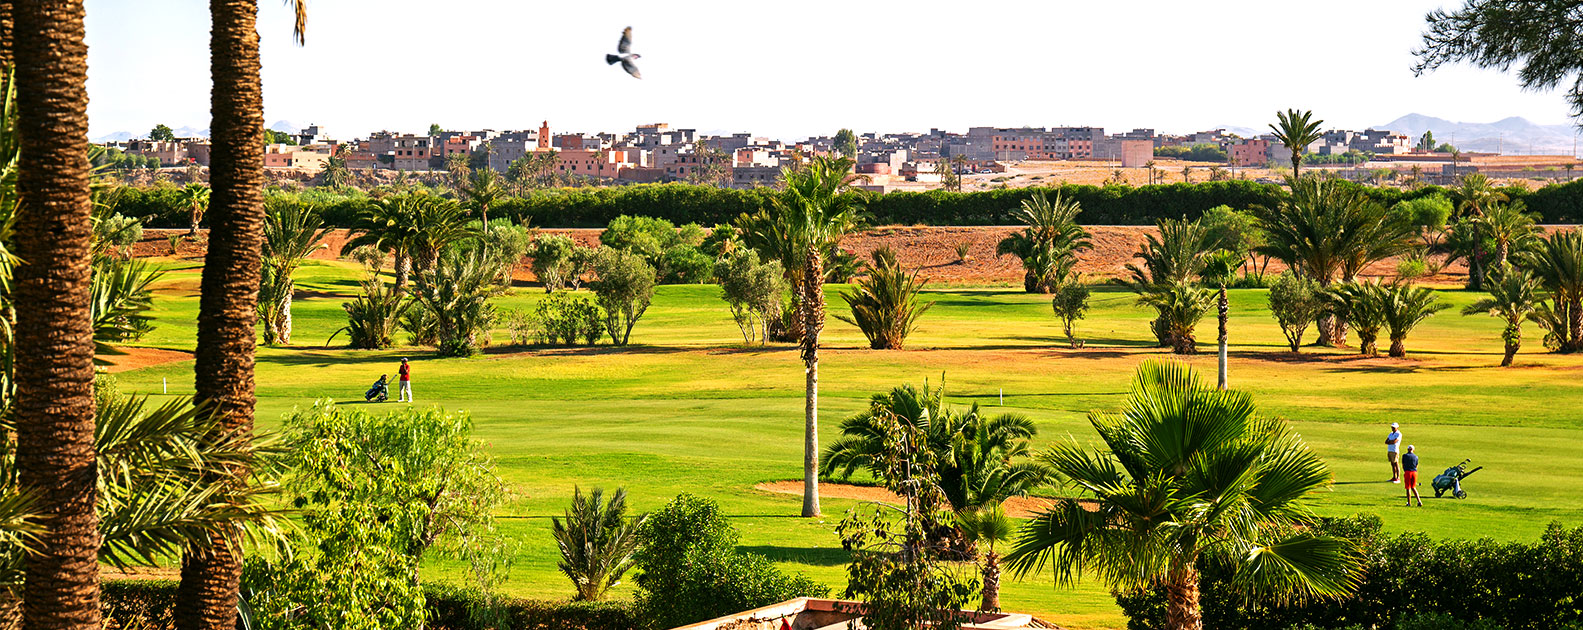 Os prazeres do golfe em Marrocos